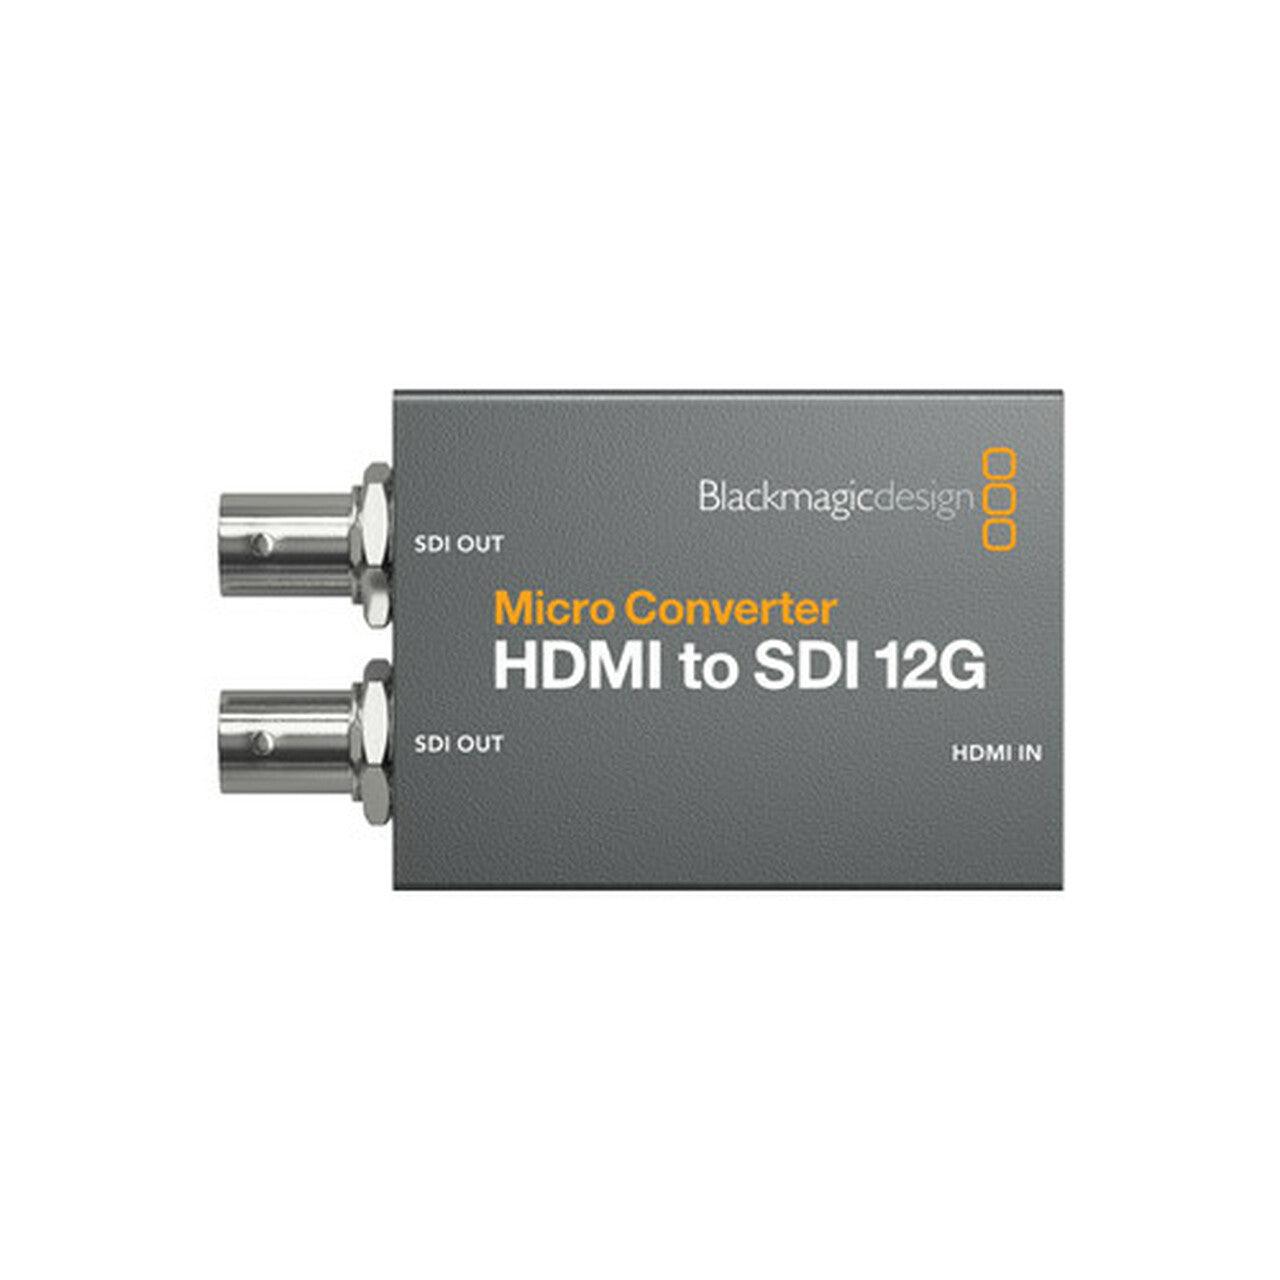 Blackmagic Design Converters Micro Converter HDMI to SDI 12G PSU